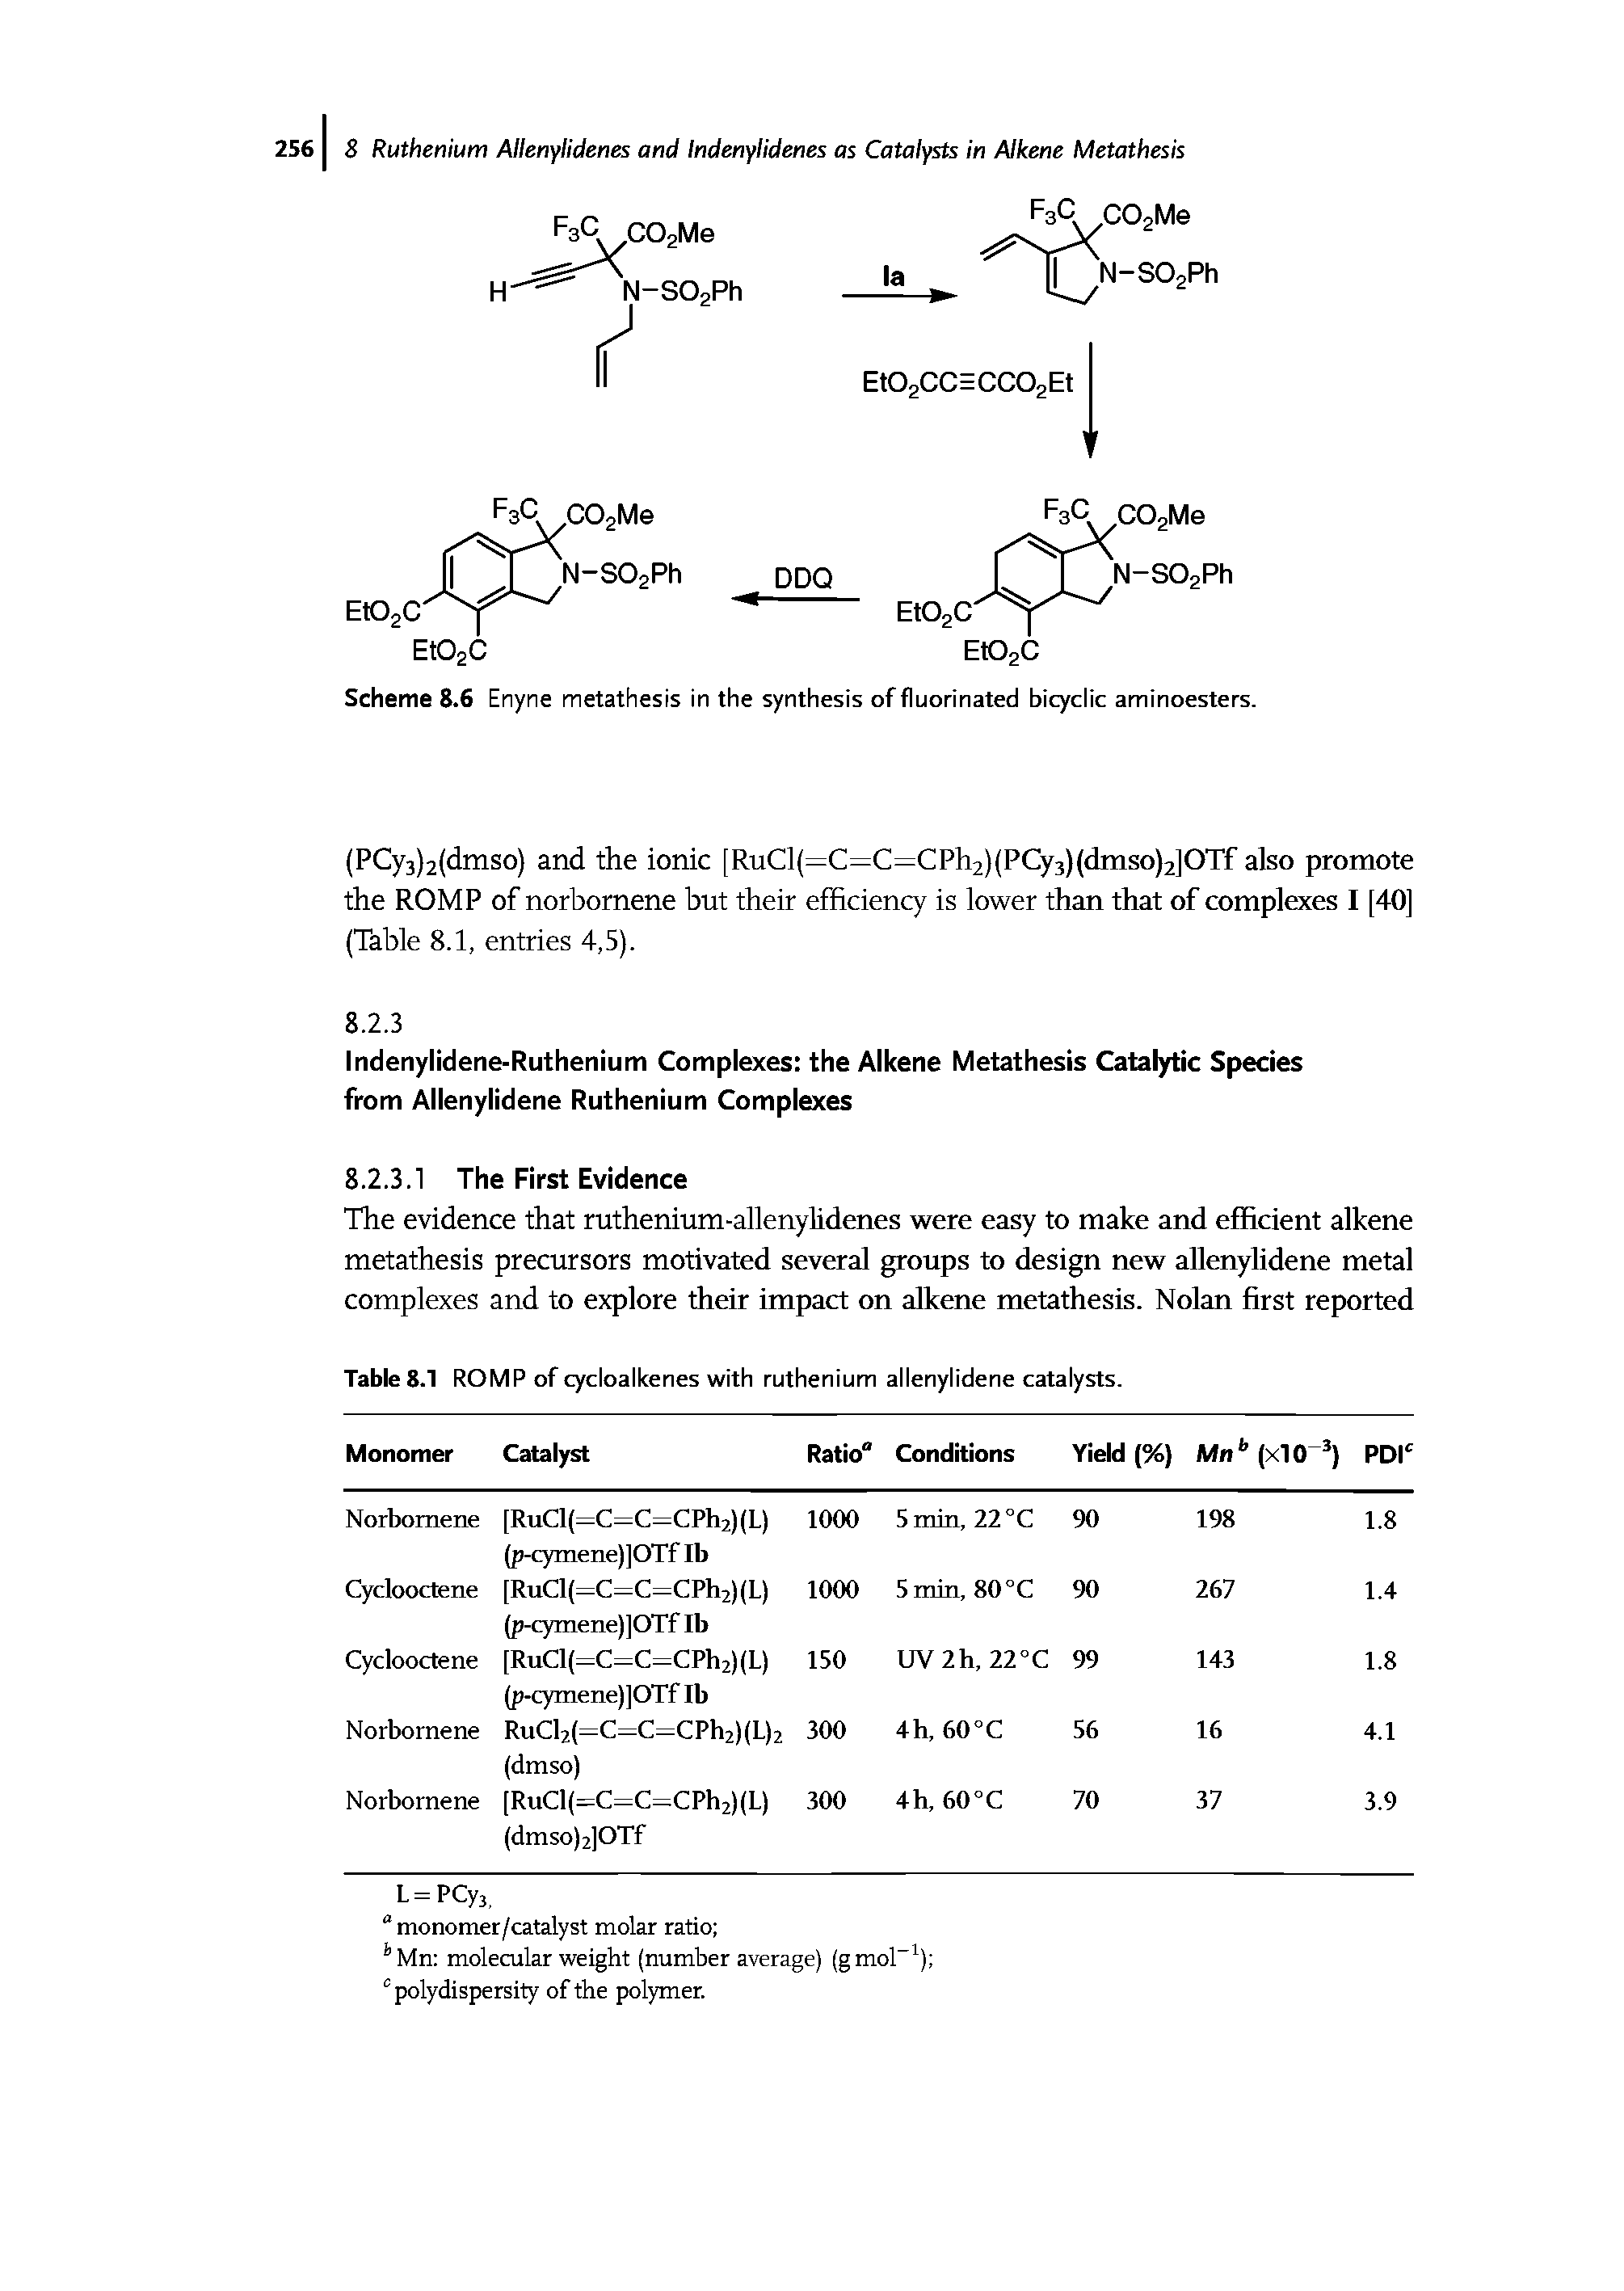 Table 8.1 ROMP of cycloalkenes with ruthenium allenylidene catalysts.